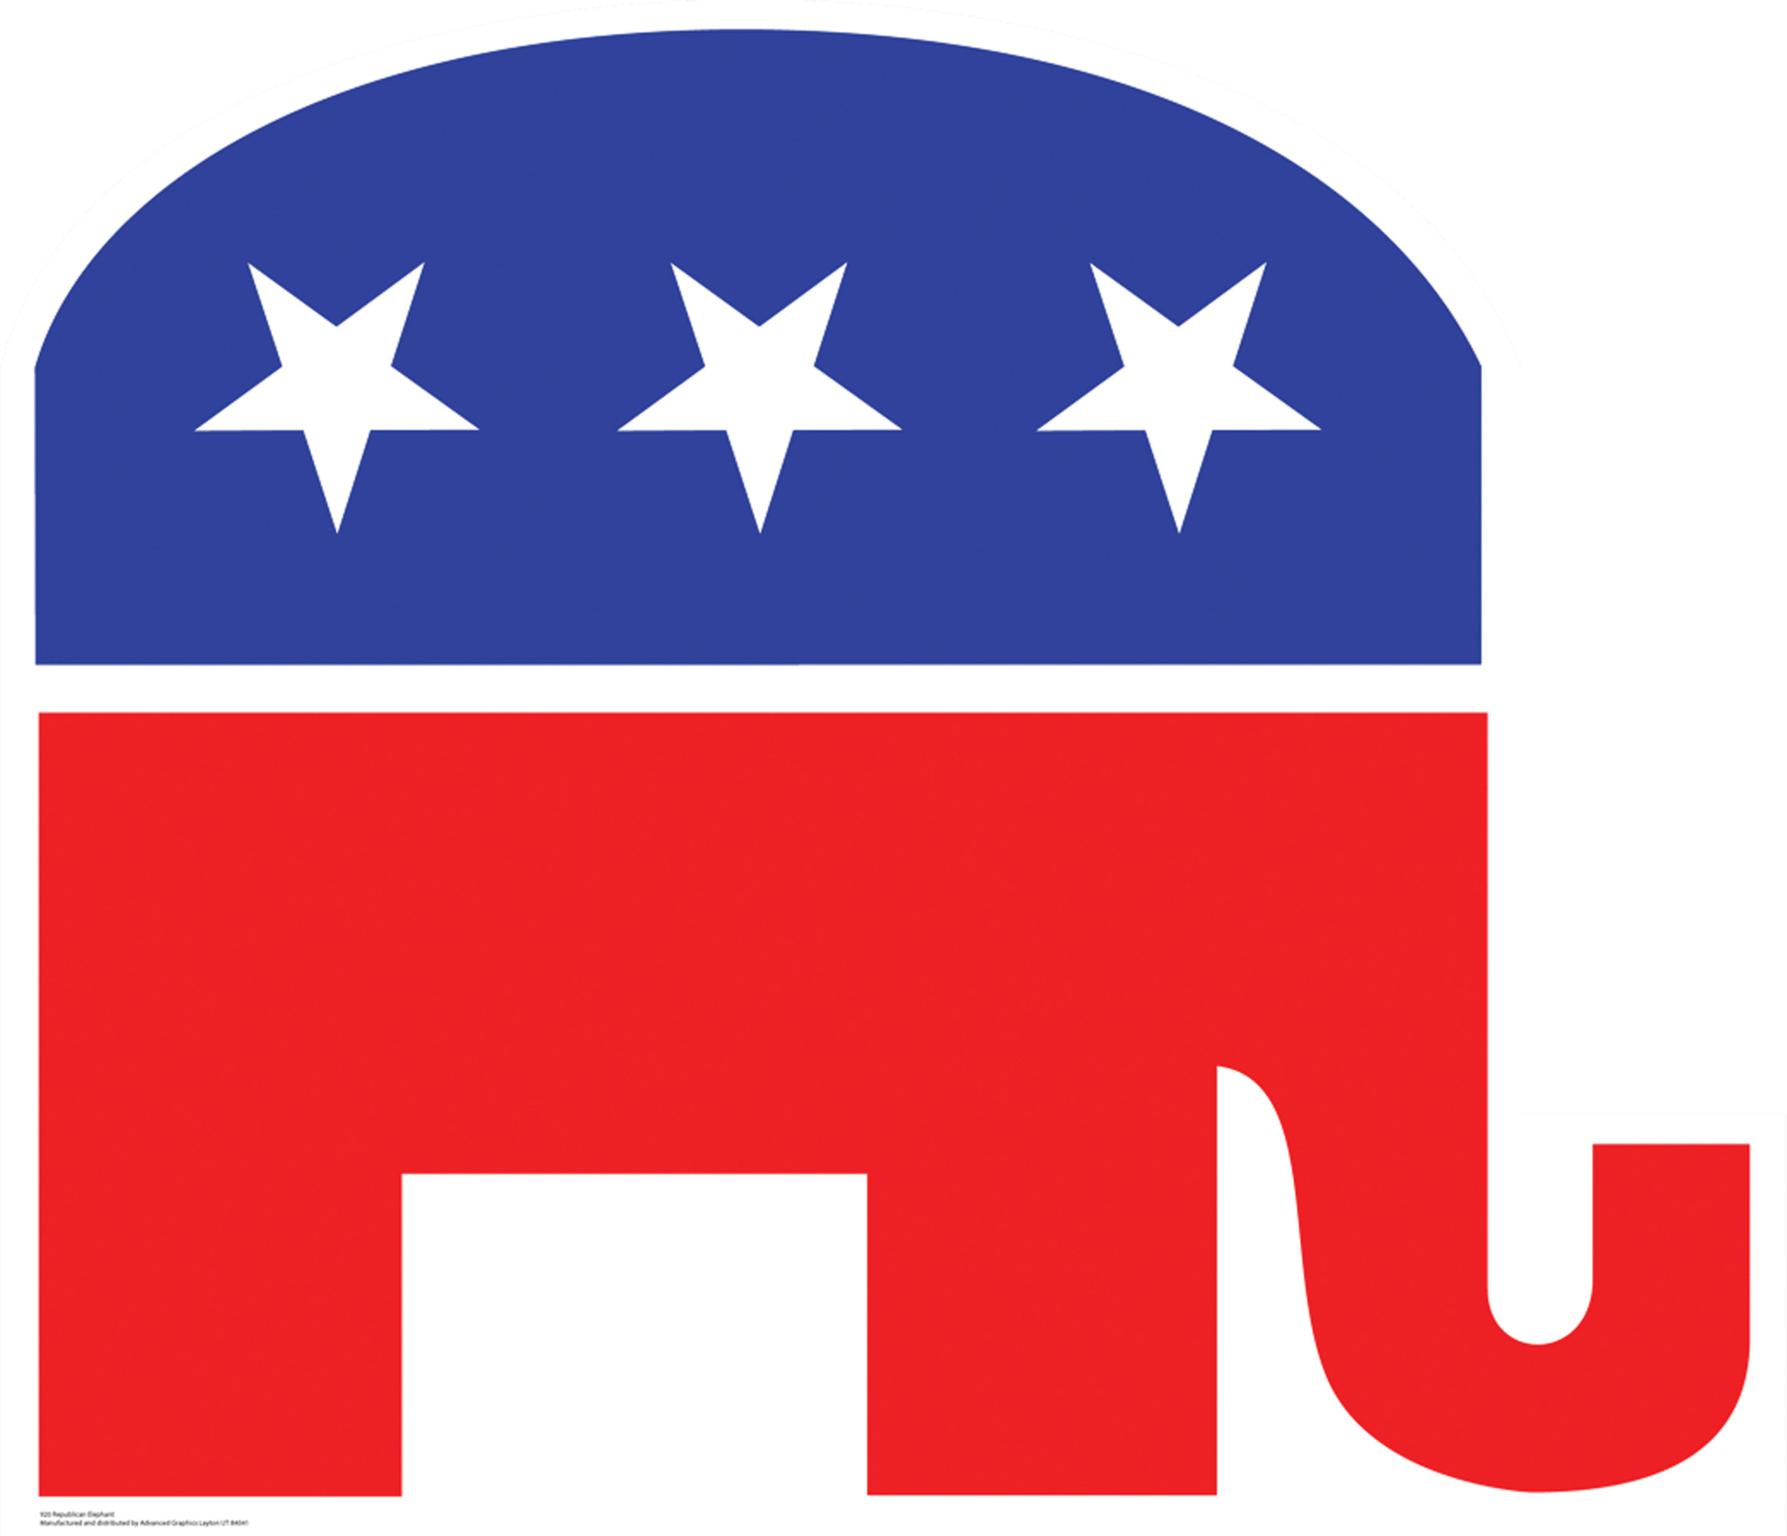 Republican sign